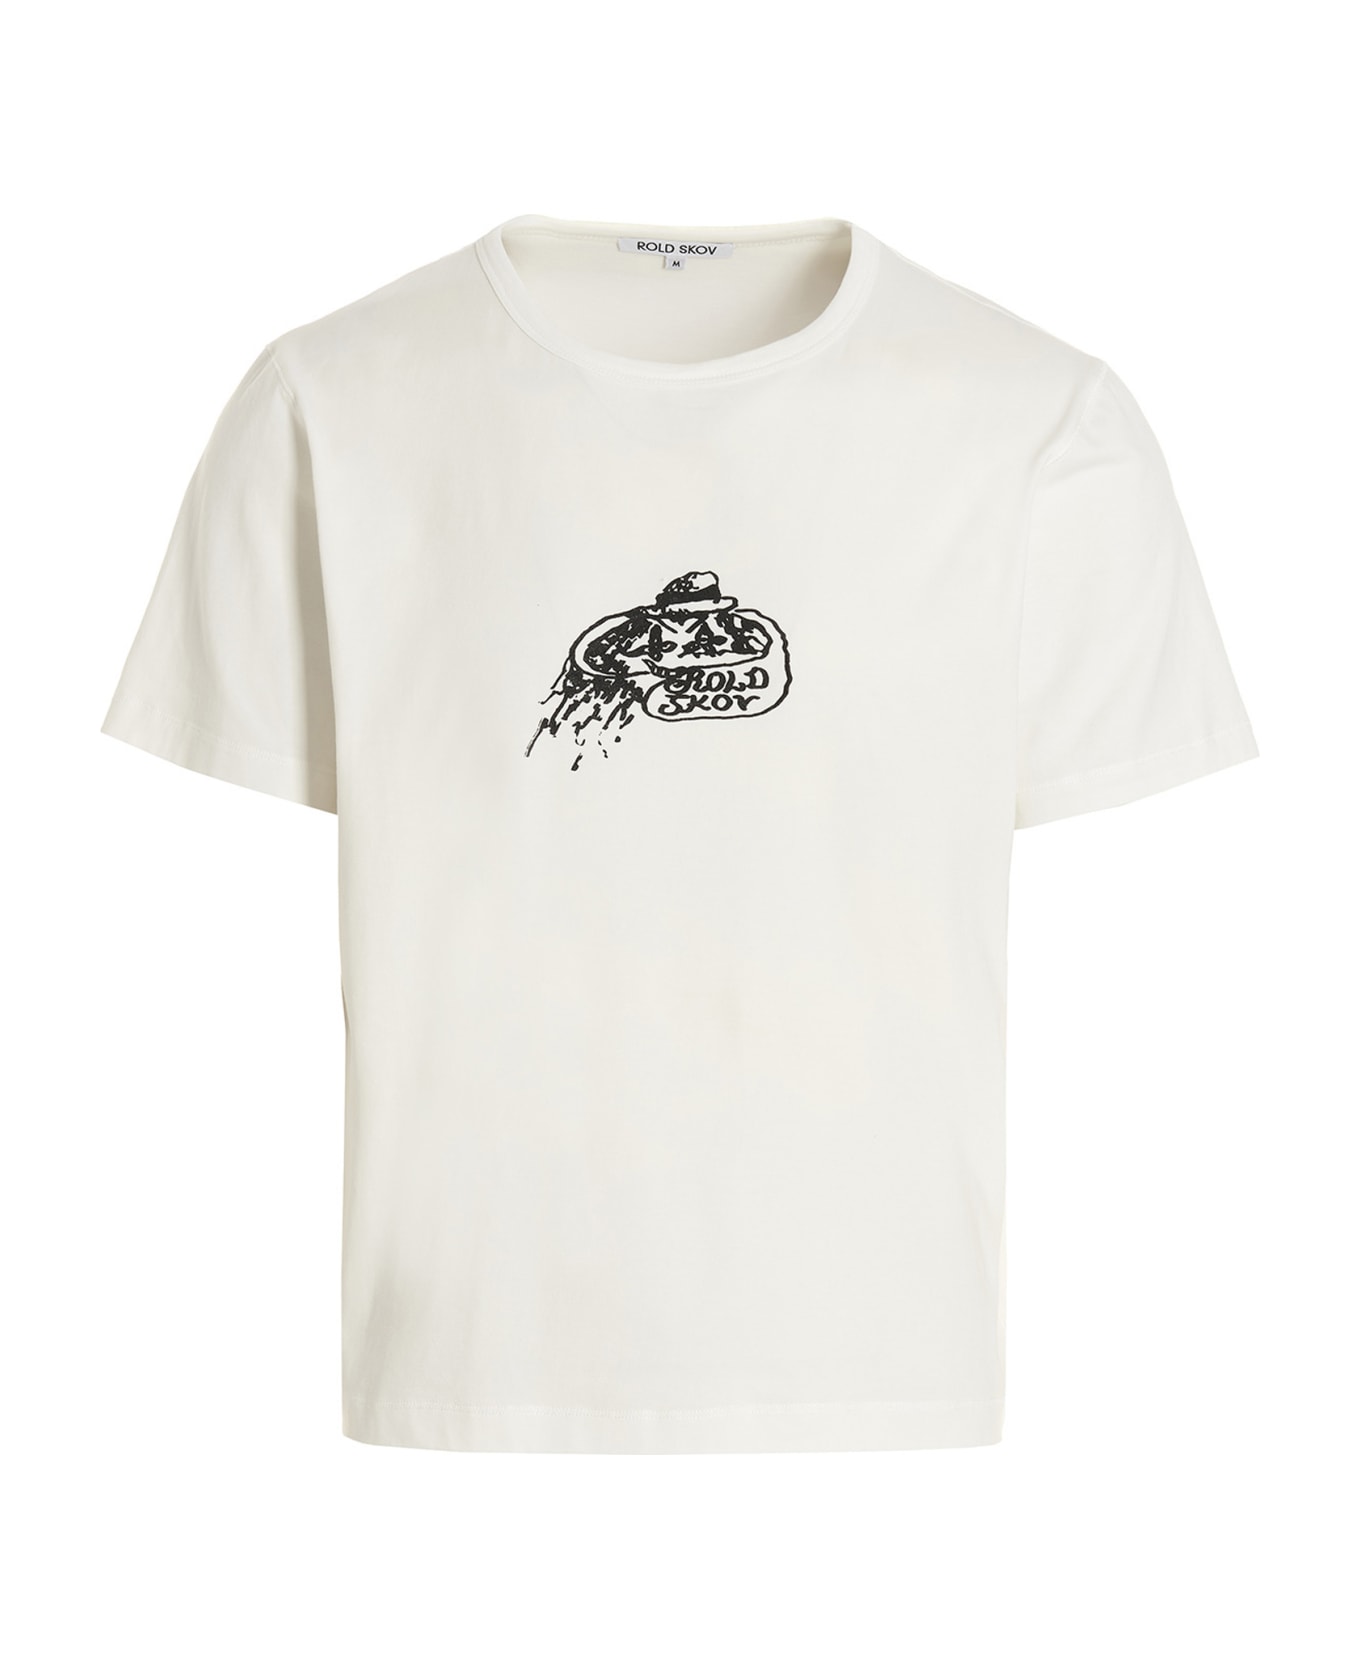 Rold Skov Printed T-shirt - White